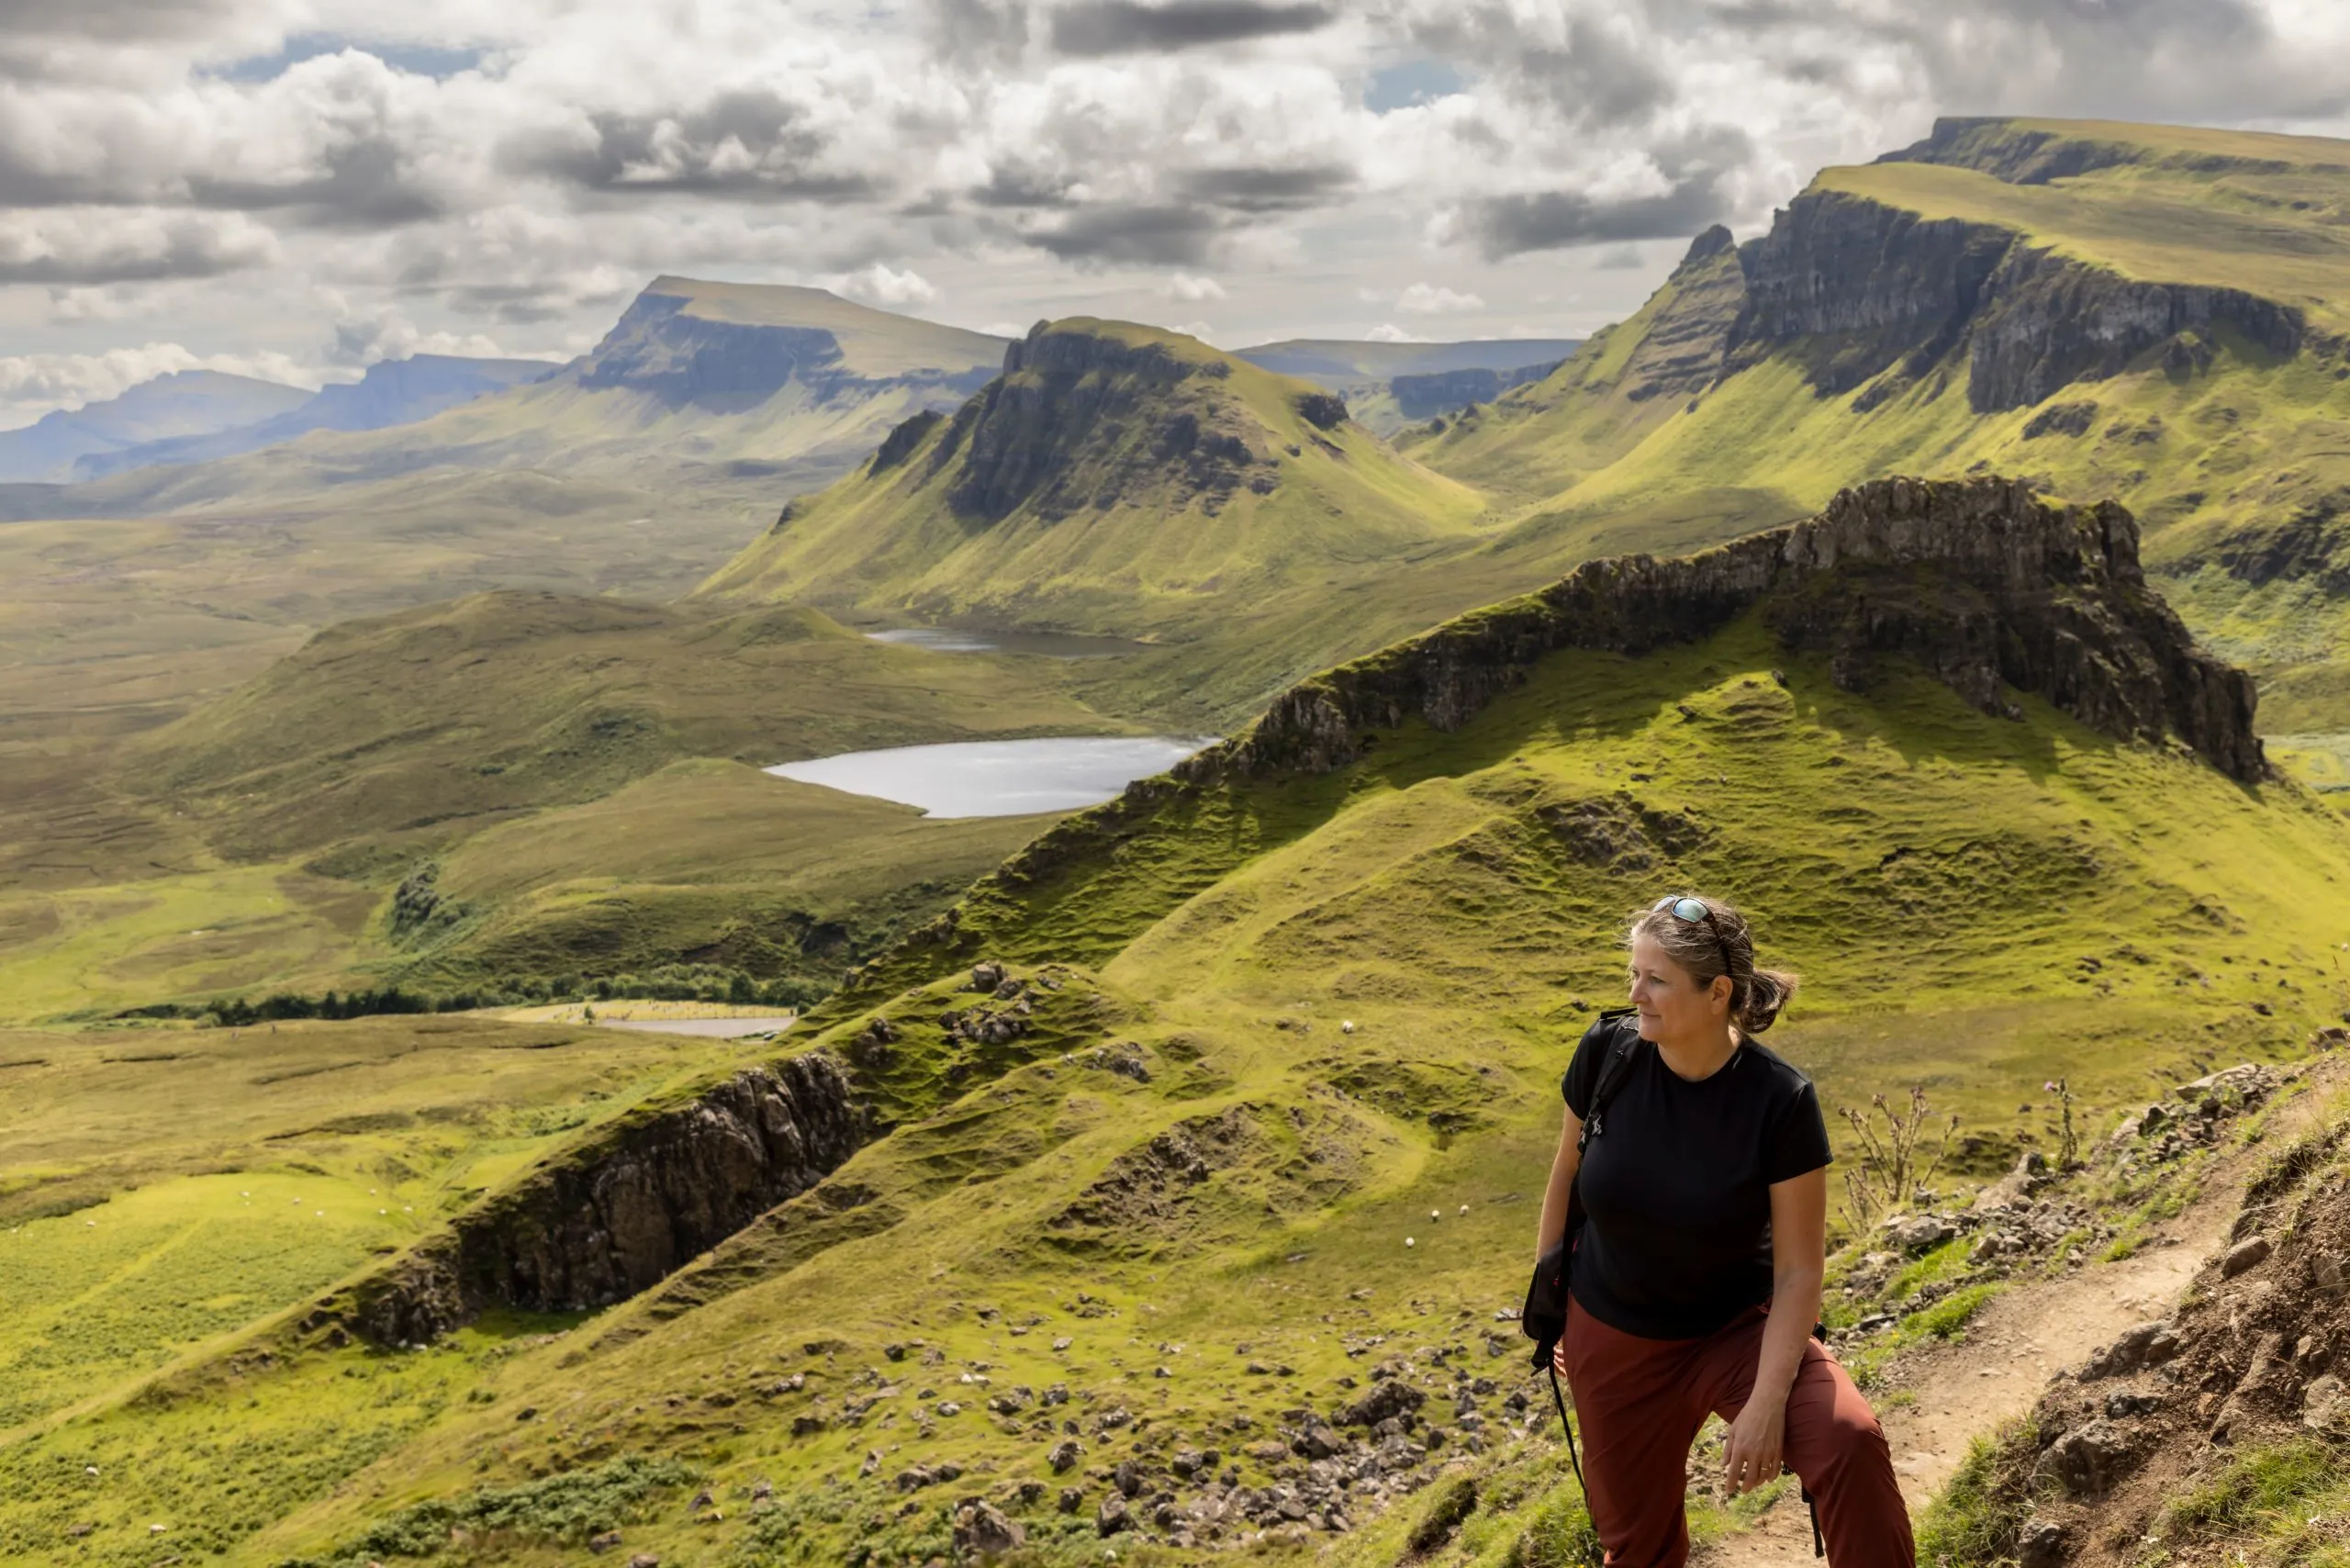 Frau beim Wandern auf der Bergkette Quiraing. Es ist eine geologische Formation auf der schottischen Insel Skye und ein Paradies für Wanderer